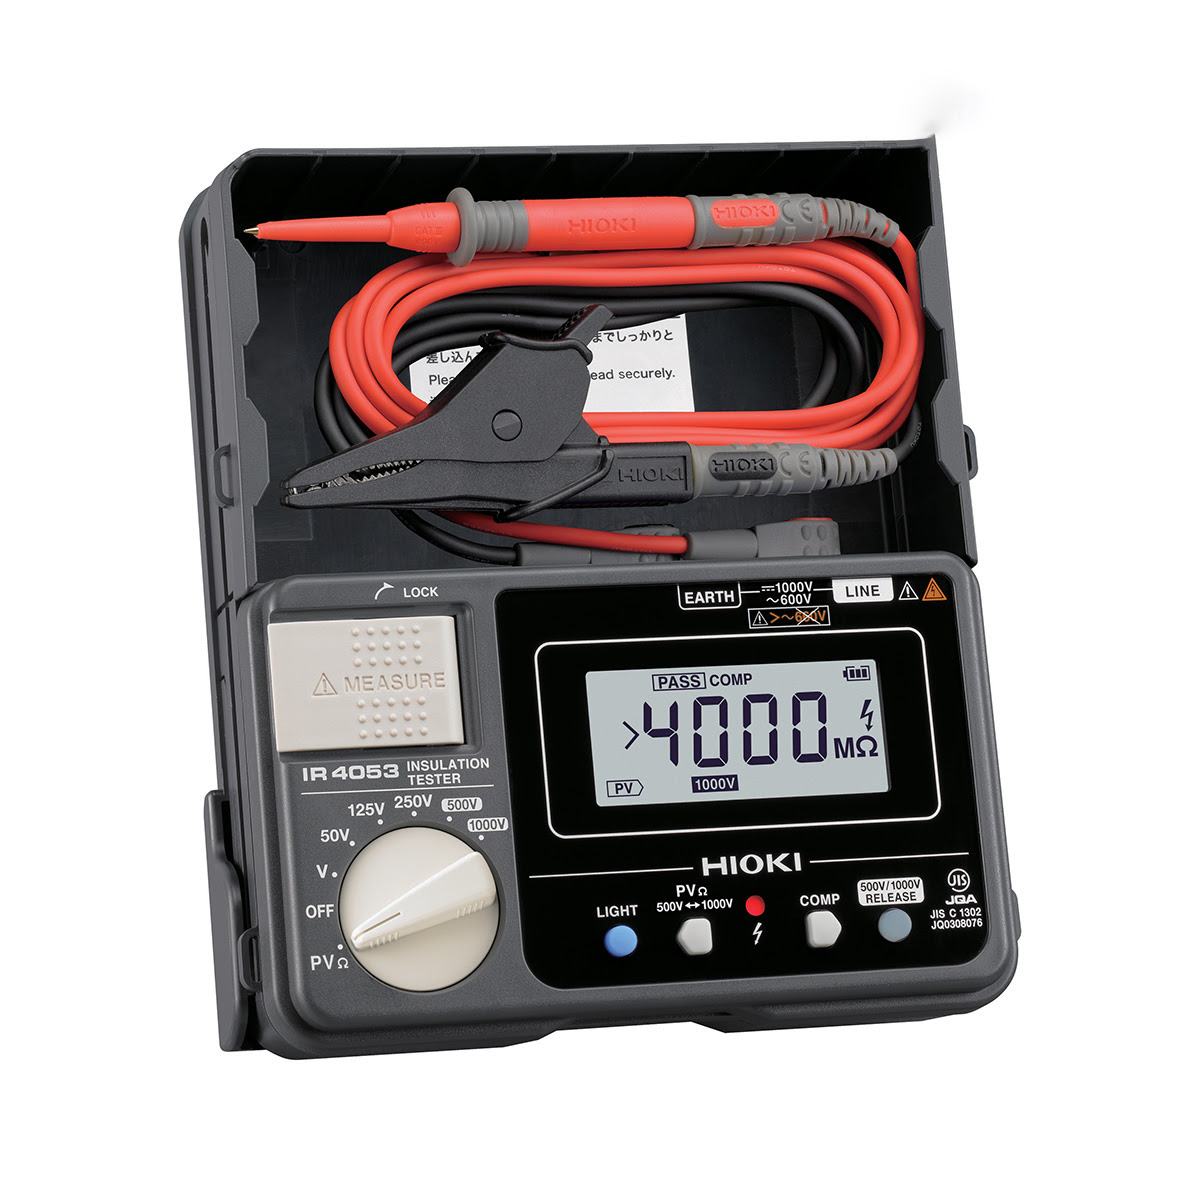 đặc điểm nổi bật của thiết bị đo điện trở cách điện hioki ir4053-10